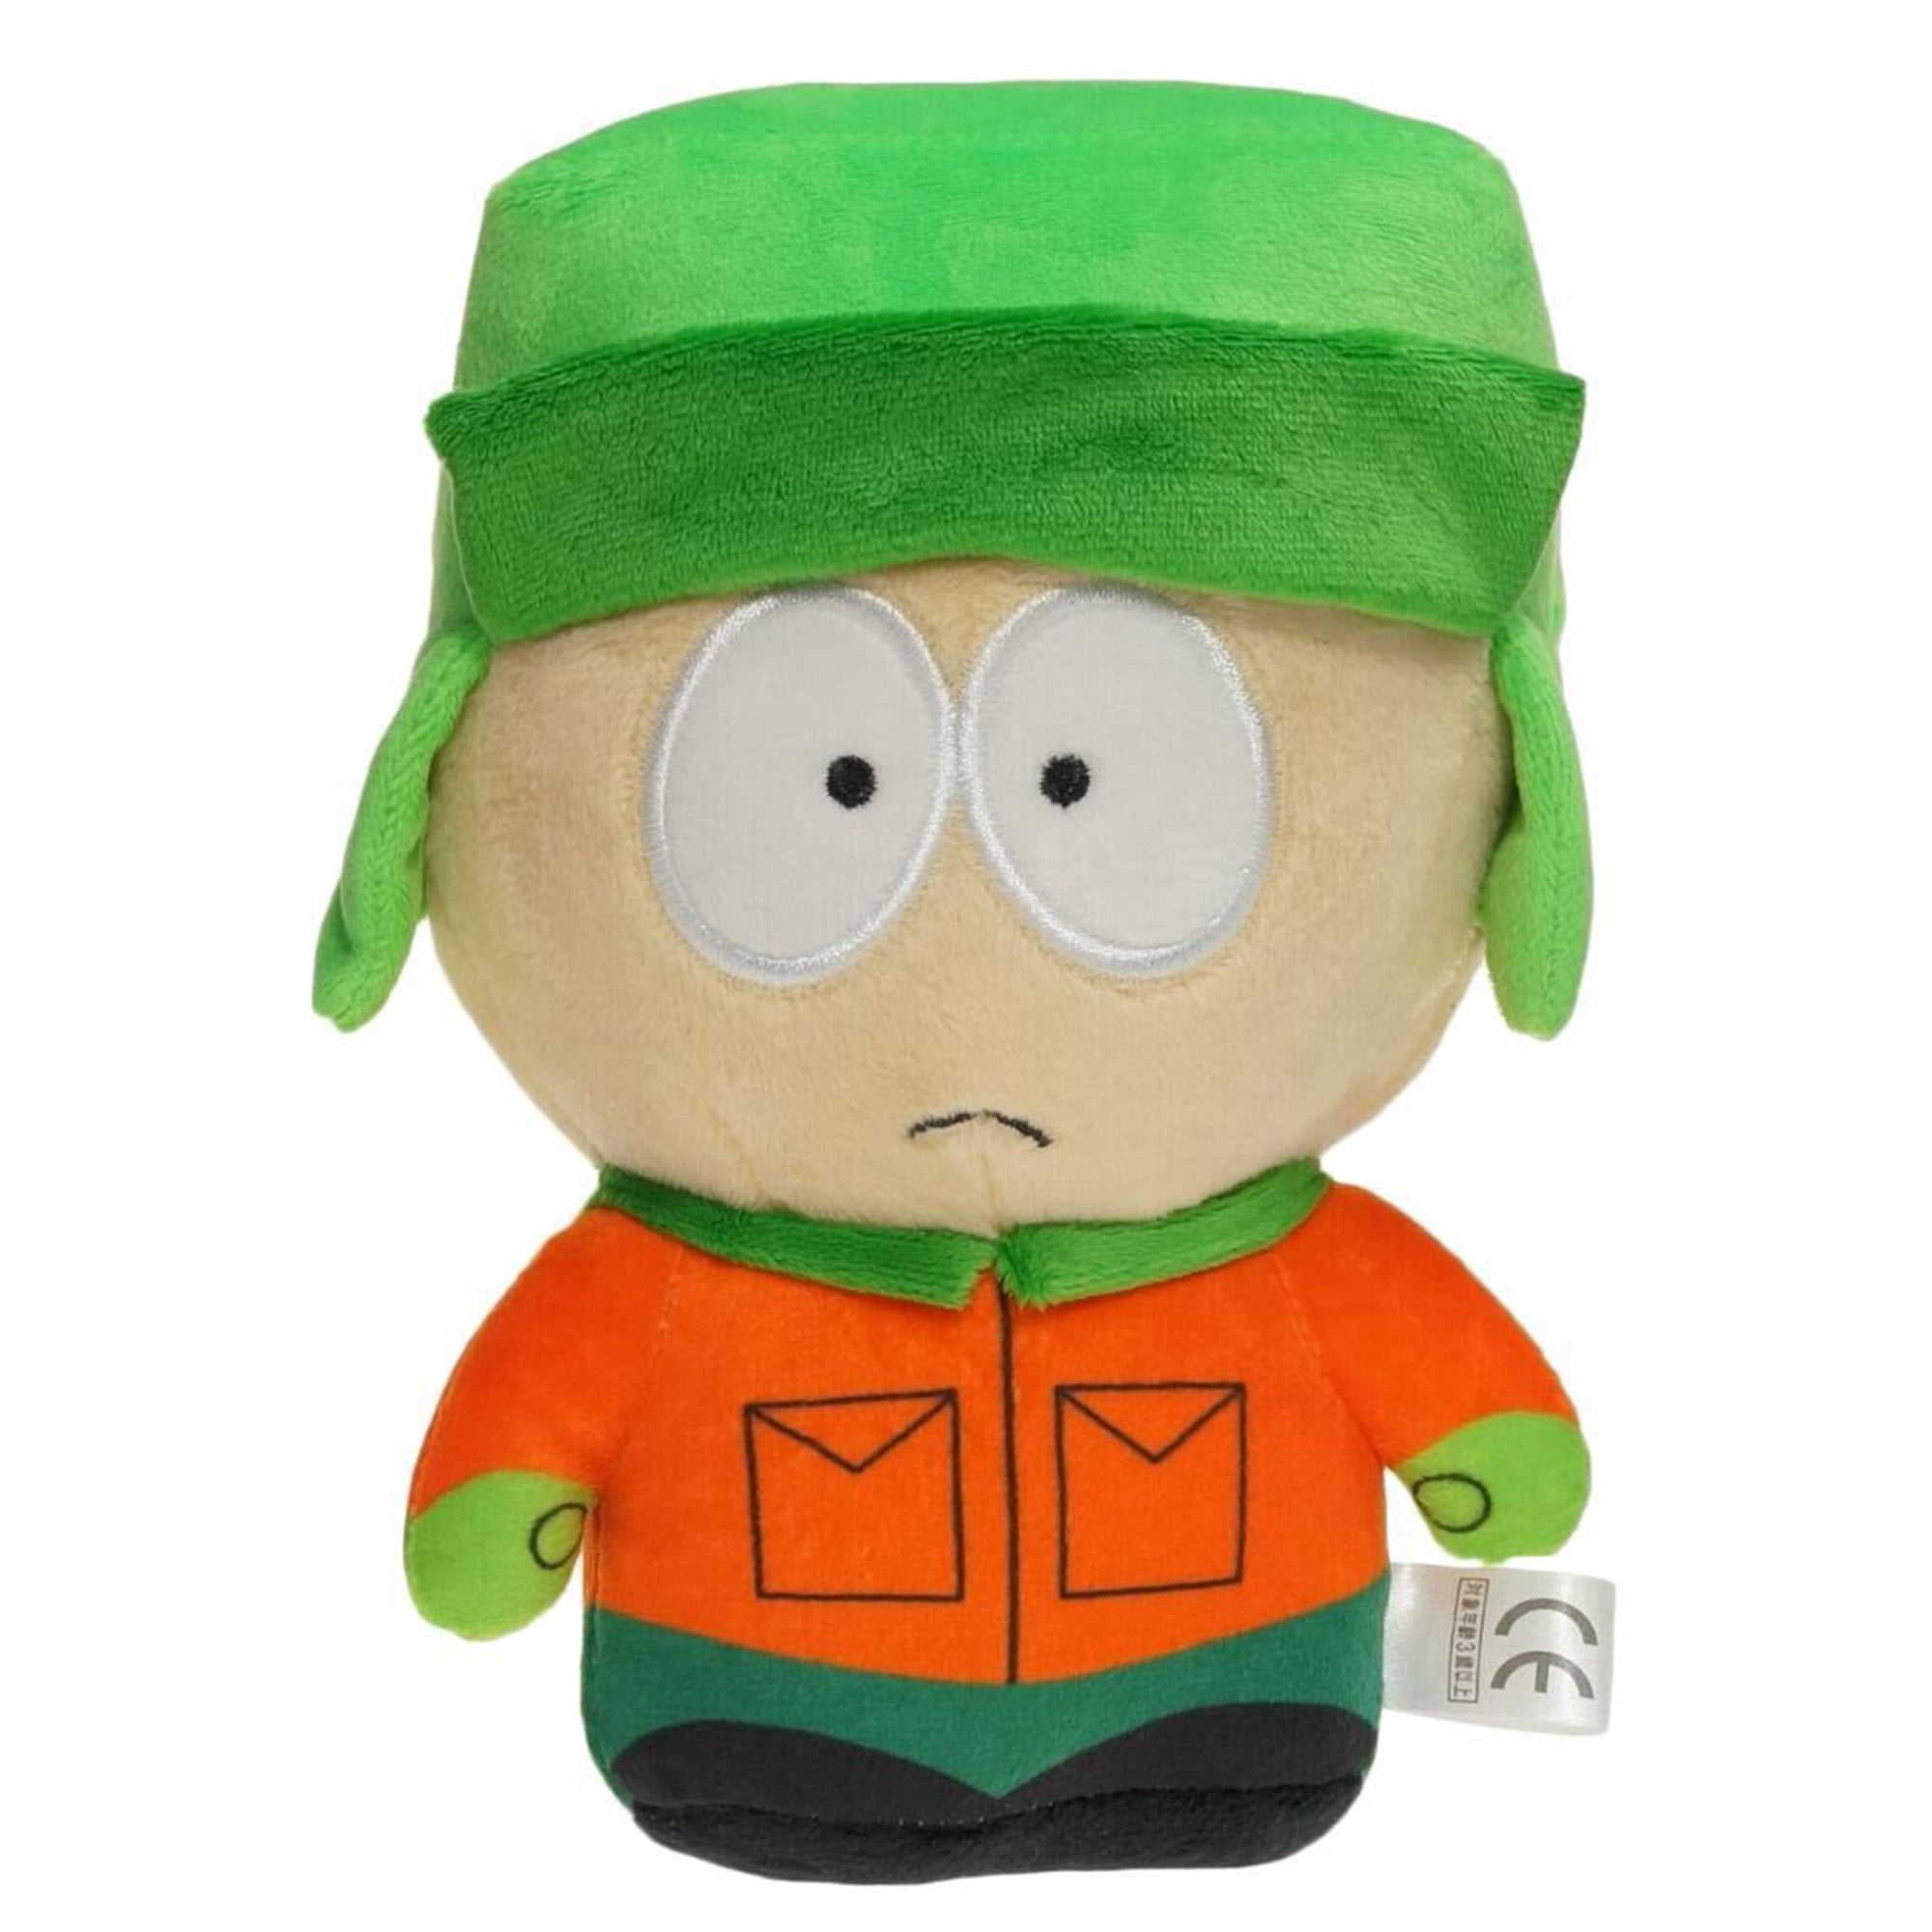 Risewill South Park Plush Toy, 8'' South Park Merchandise Plush Figure ...